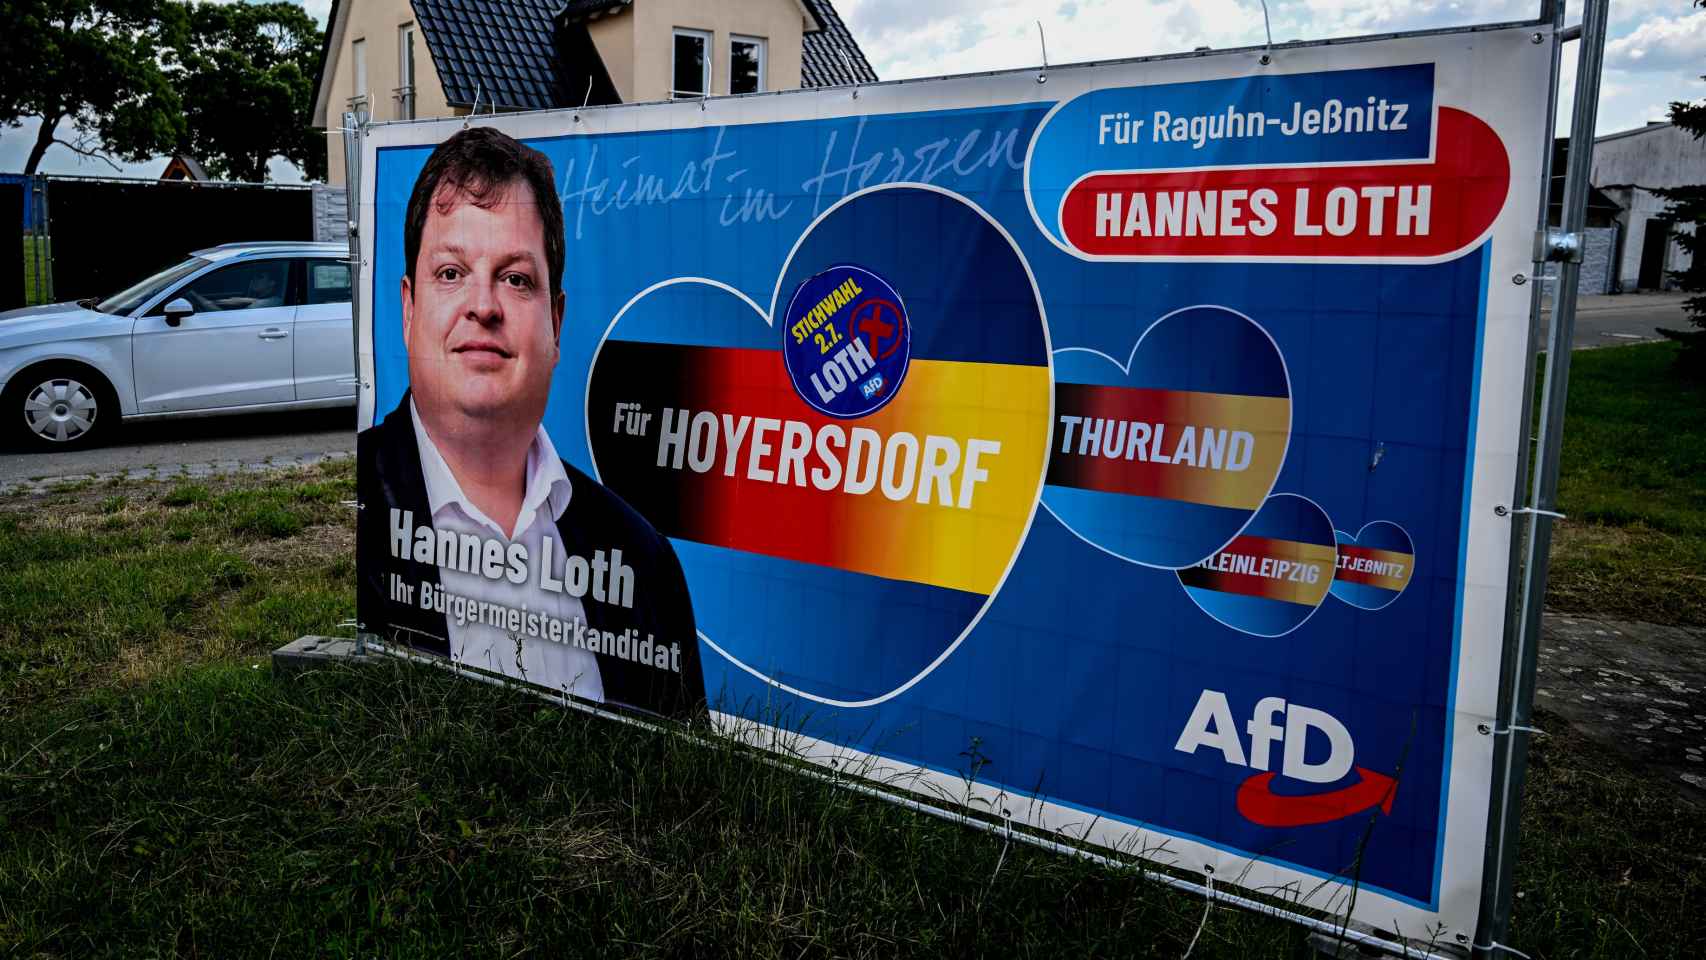 Un cartel de la campaña electoral de Hannes Loth (AfD) en Raguhn-Jeßnitz, el 3 de julio.